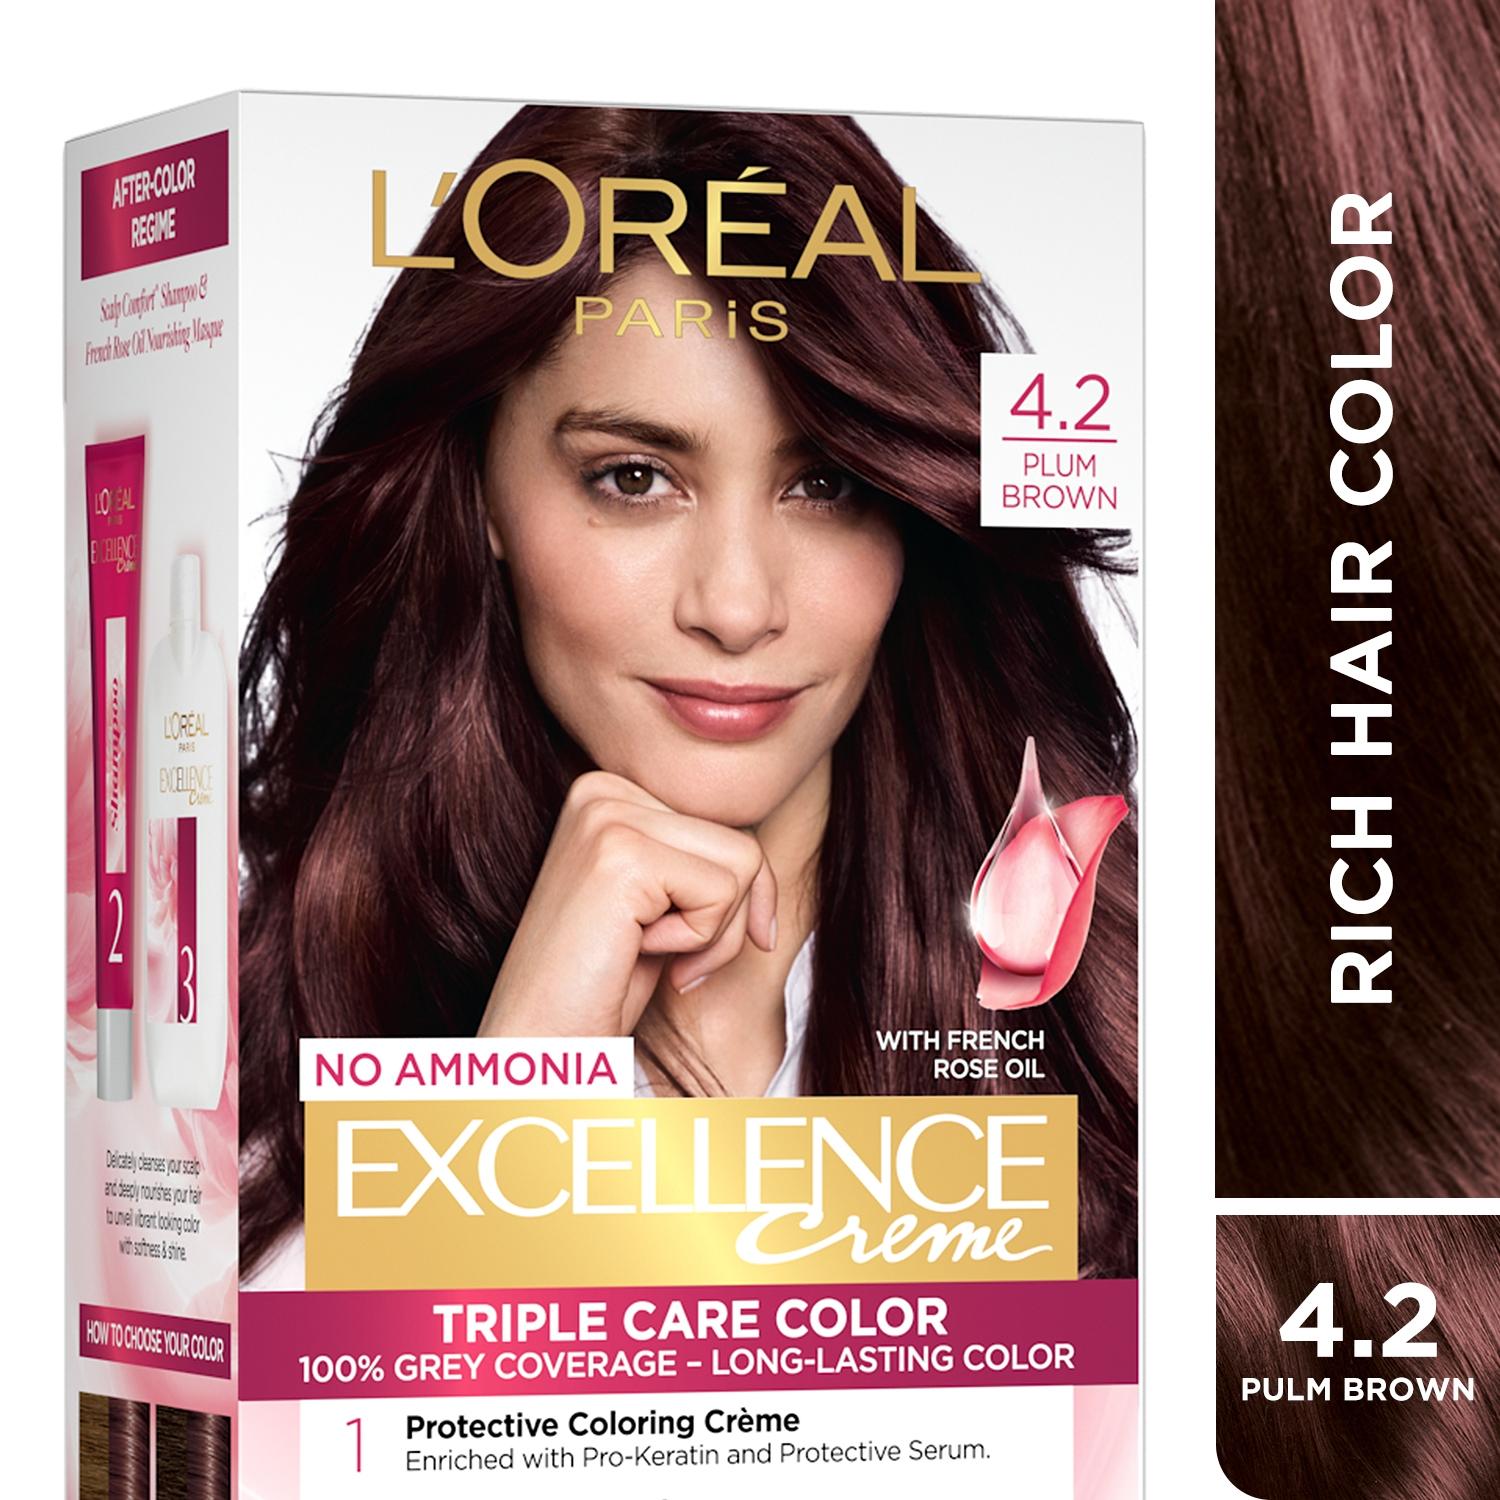 l'oreal paris excellence creme hair color, 4.2 plum brown, 72ml+100g